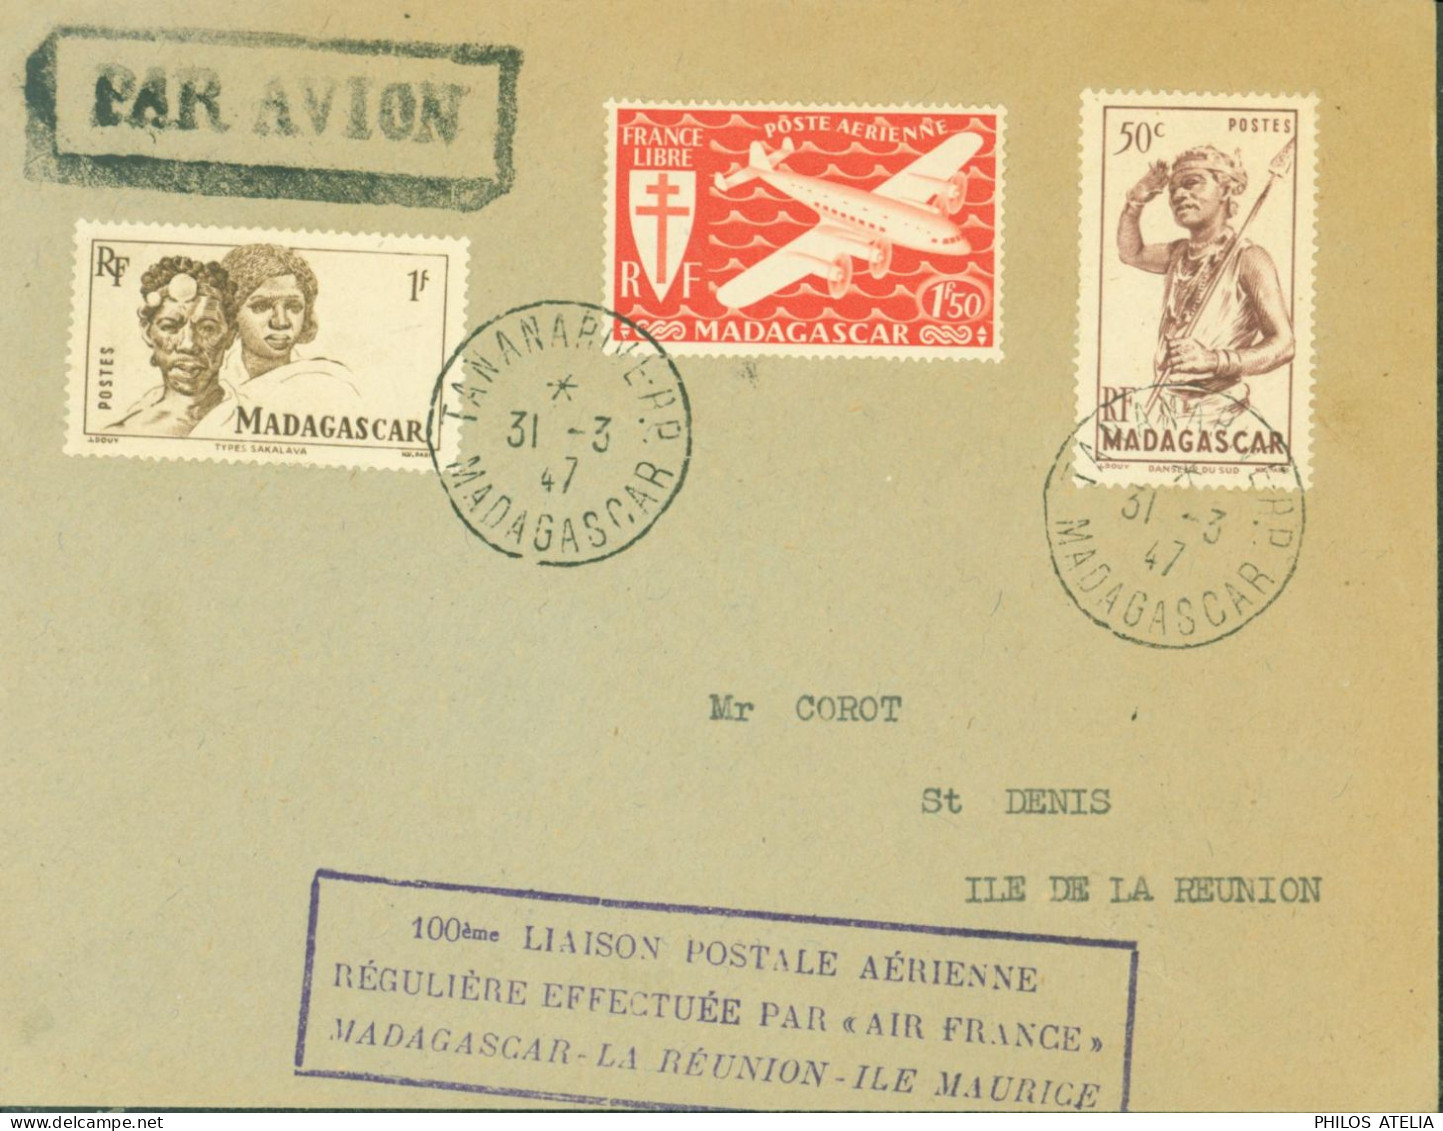 100 Liaison Postale Aérienne Régulière Effectuée Par Air France Madagascar La Réunion Ile Maurice CAD Tananarive 31 3 47 - Luftpost